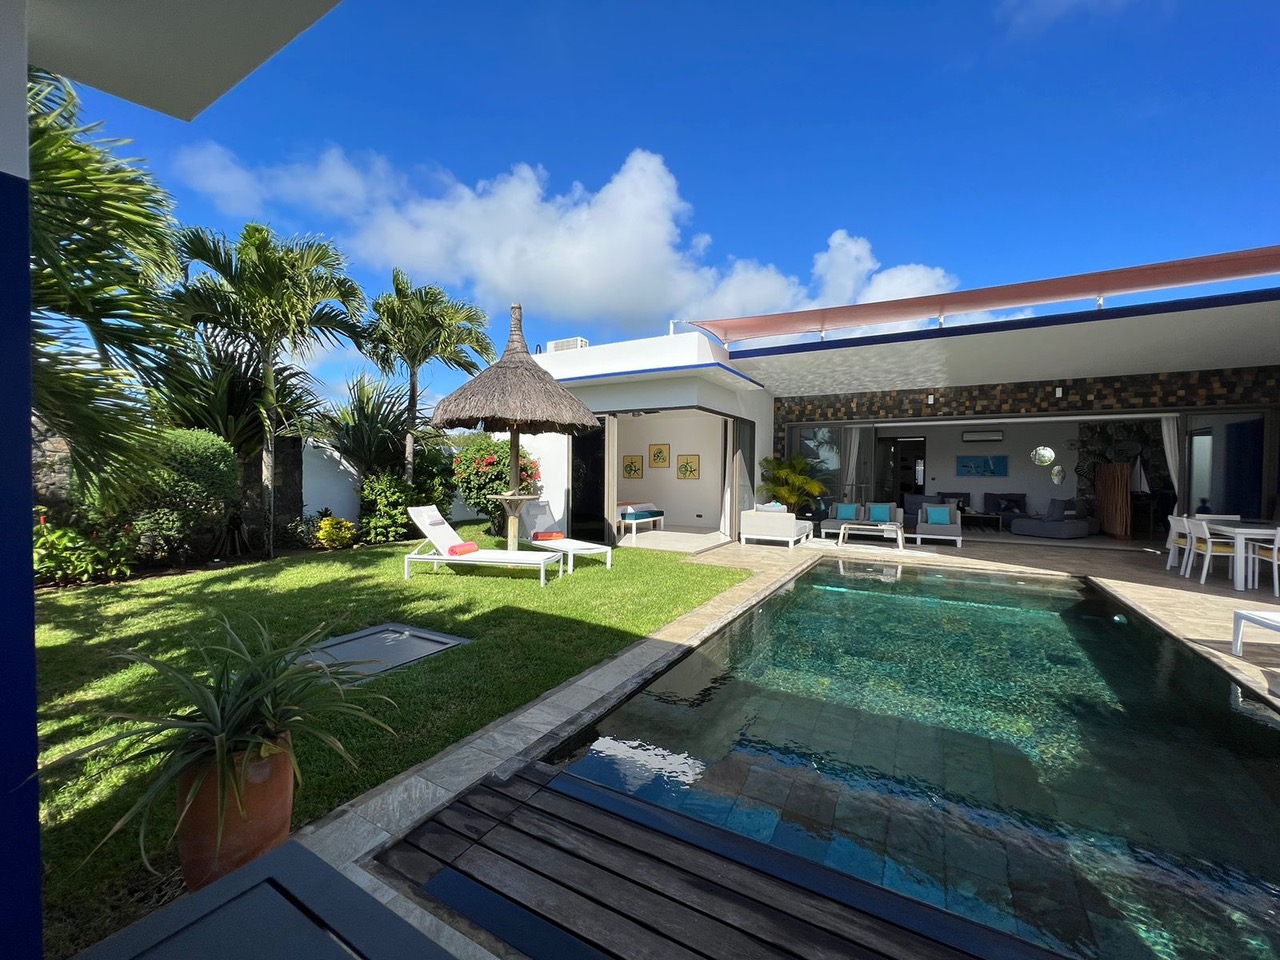 Revente PDS maison contemporaine de luxe cap malheureux île Maurice par JINVESTY île Maurice 